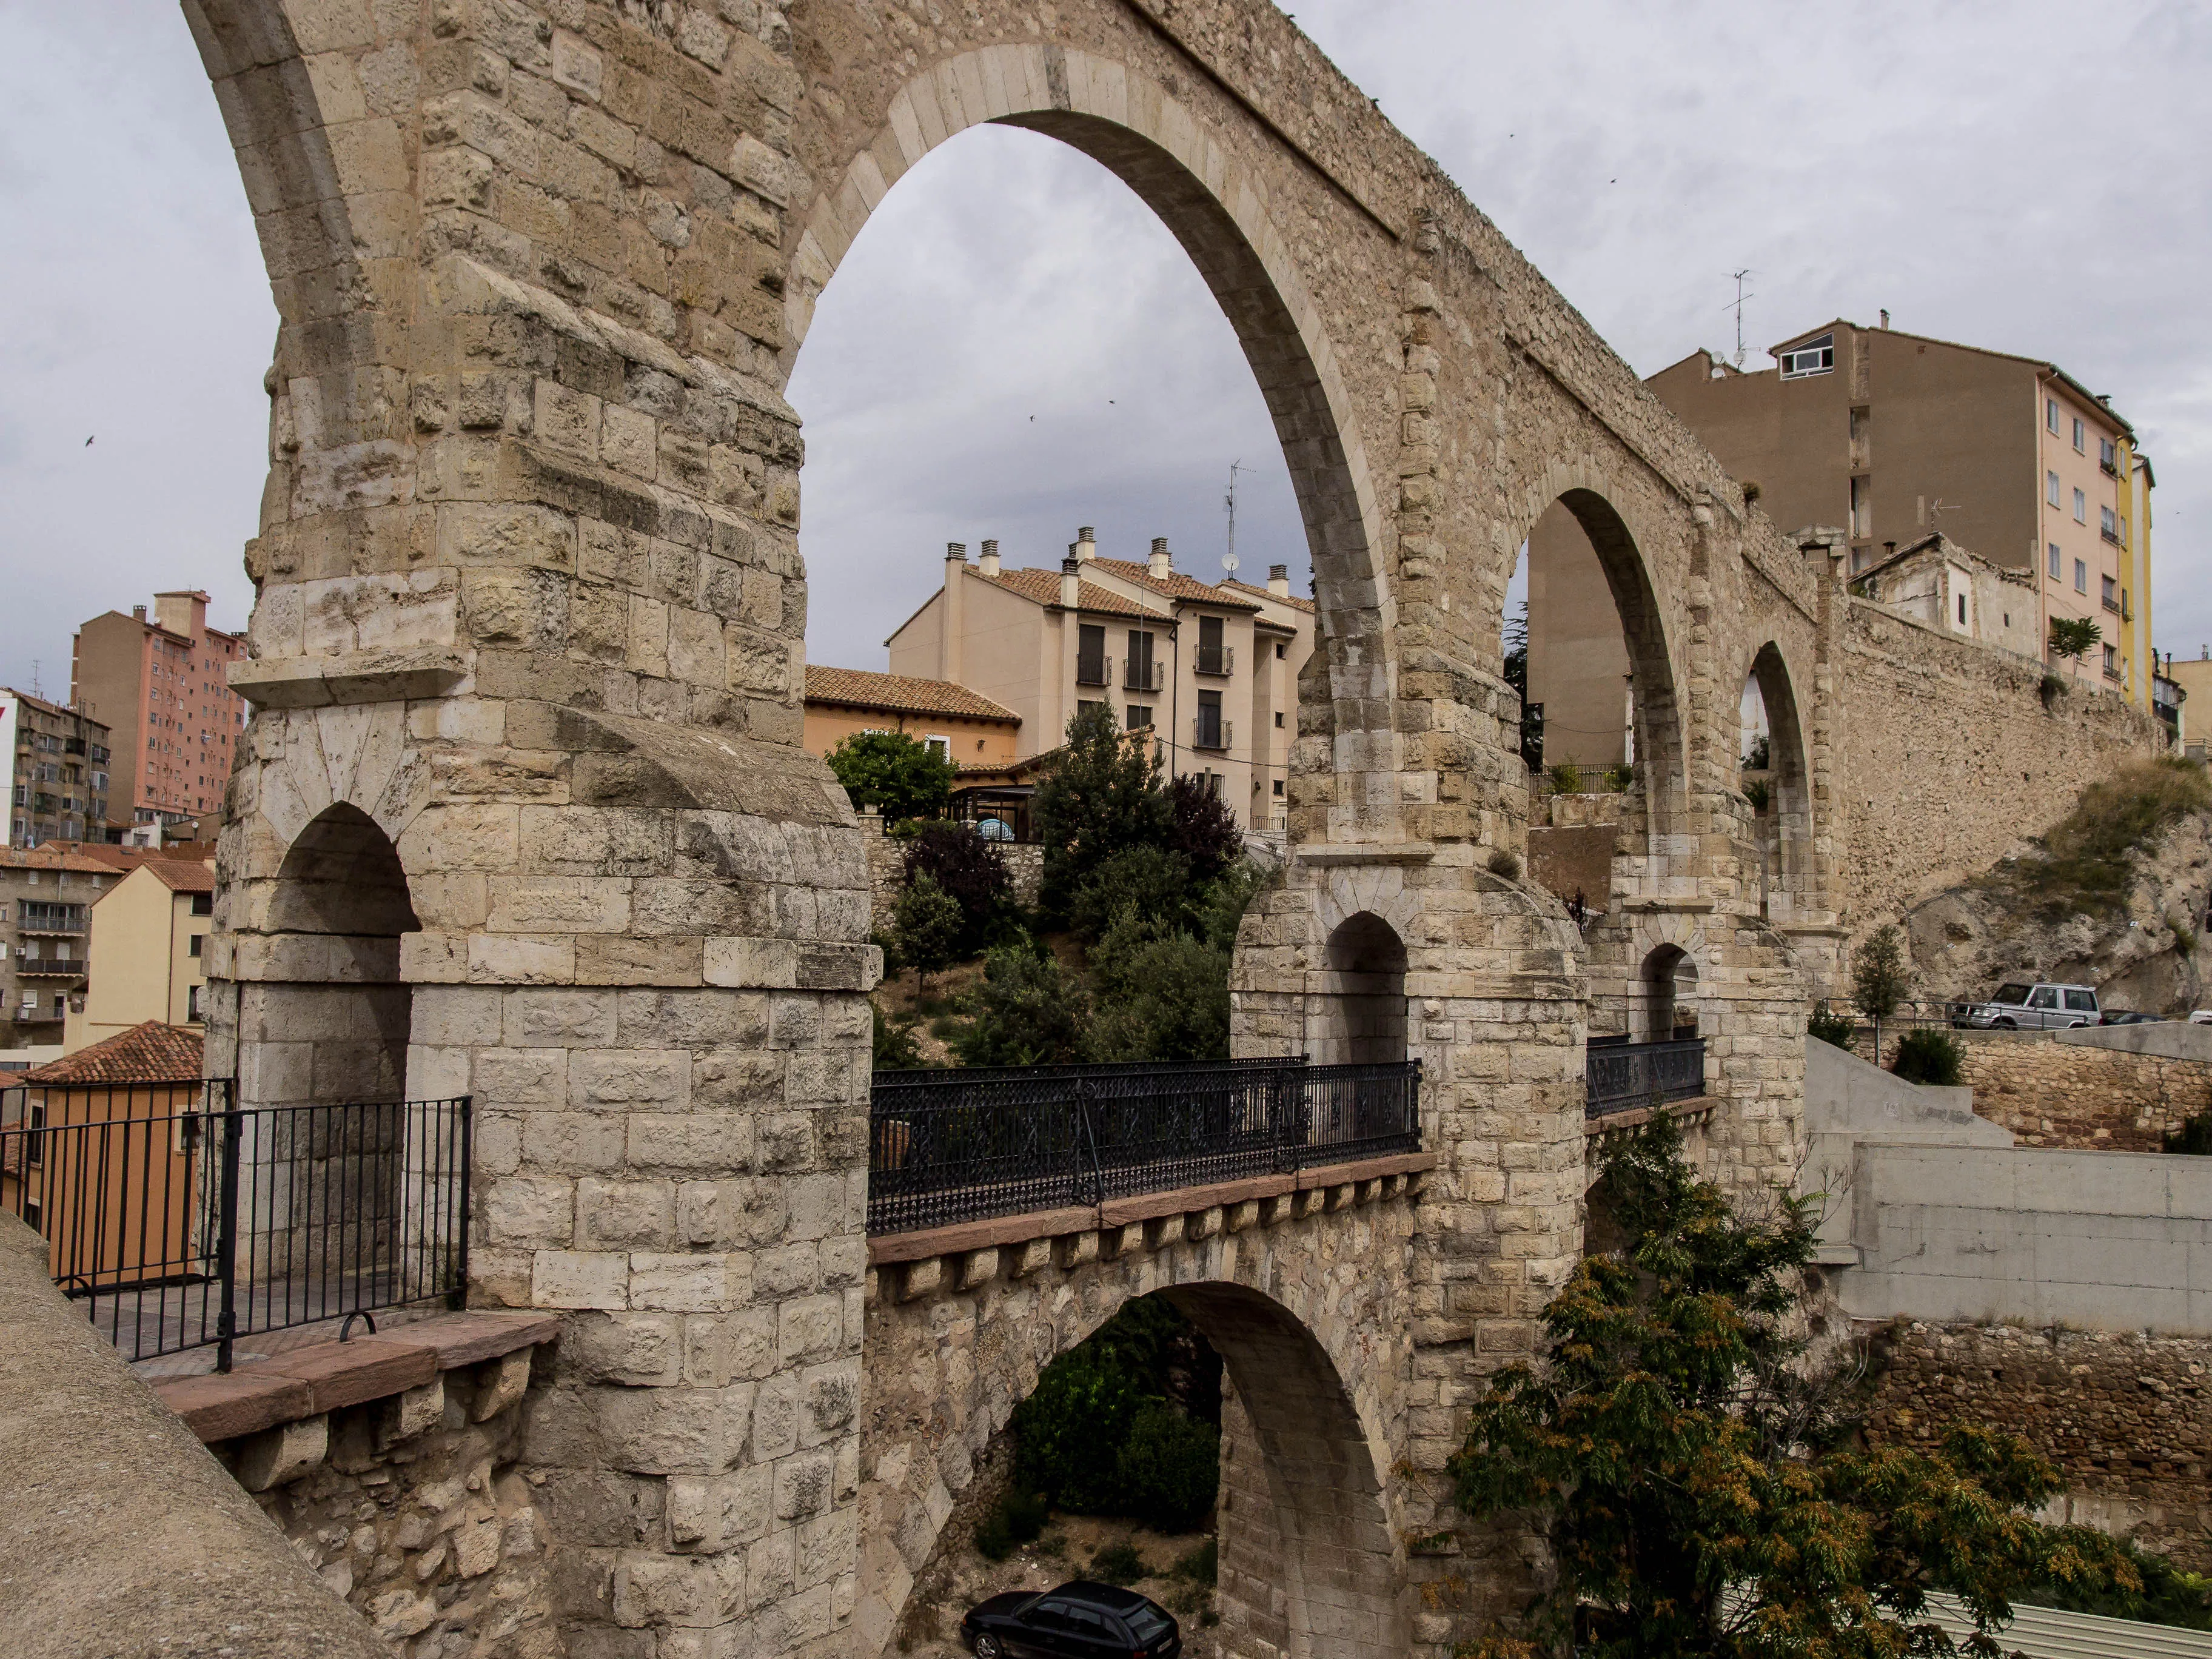 Acueducto de Teruel in Spain, Europe | Architecture - Rated 3.5